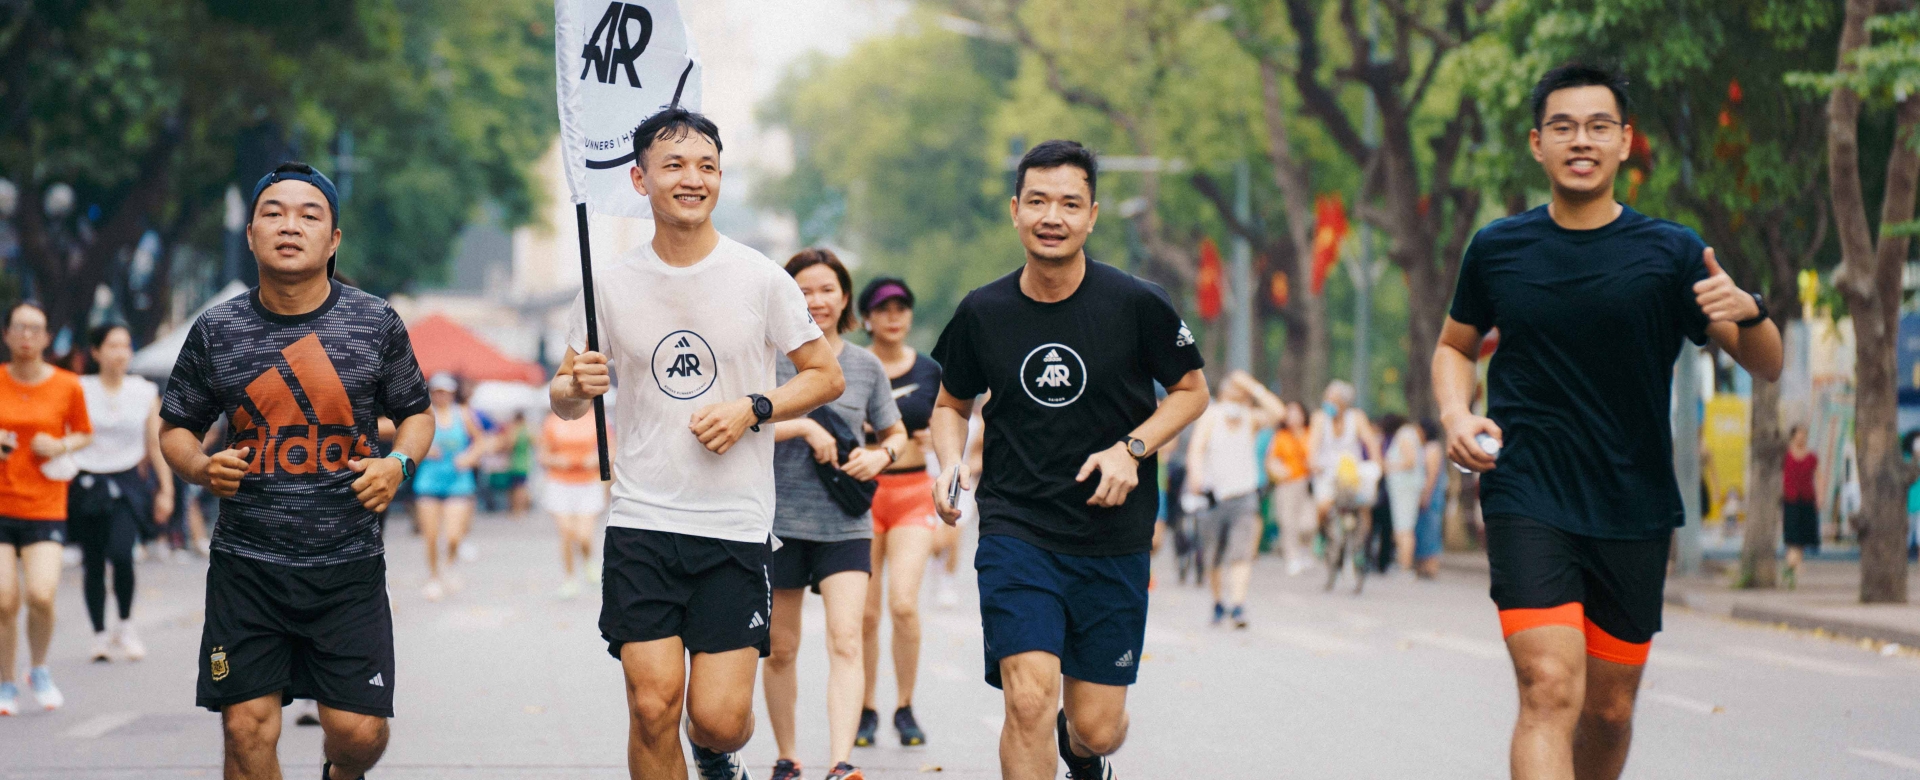 Cộng đồng chạy bộ adidas Runners Hanoi chính thức ra mắt